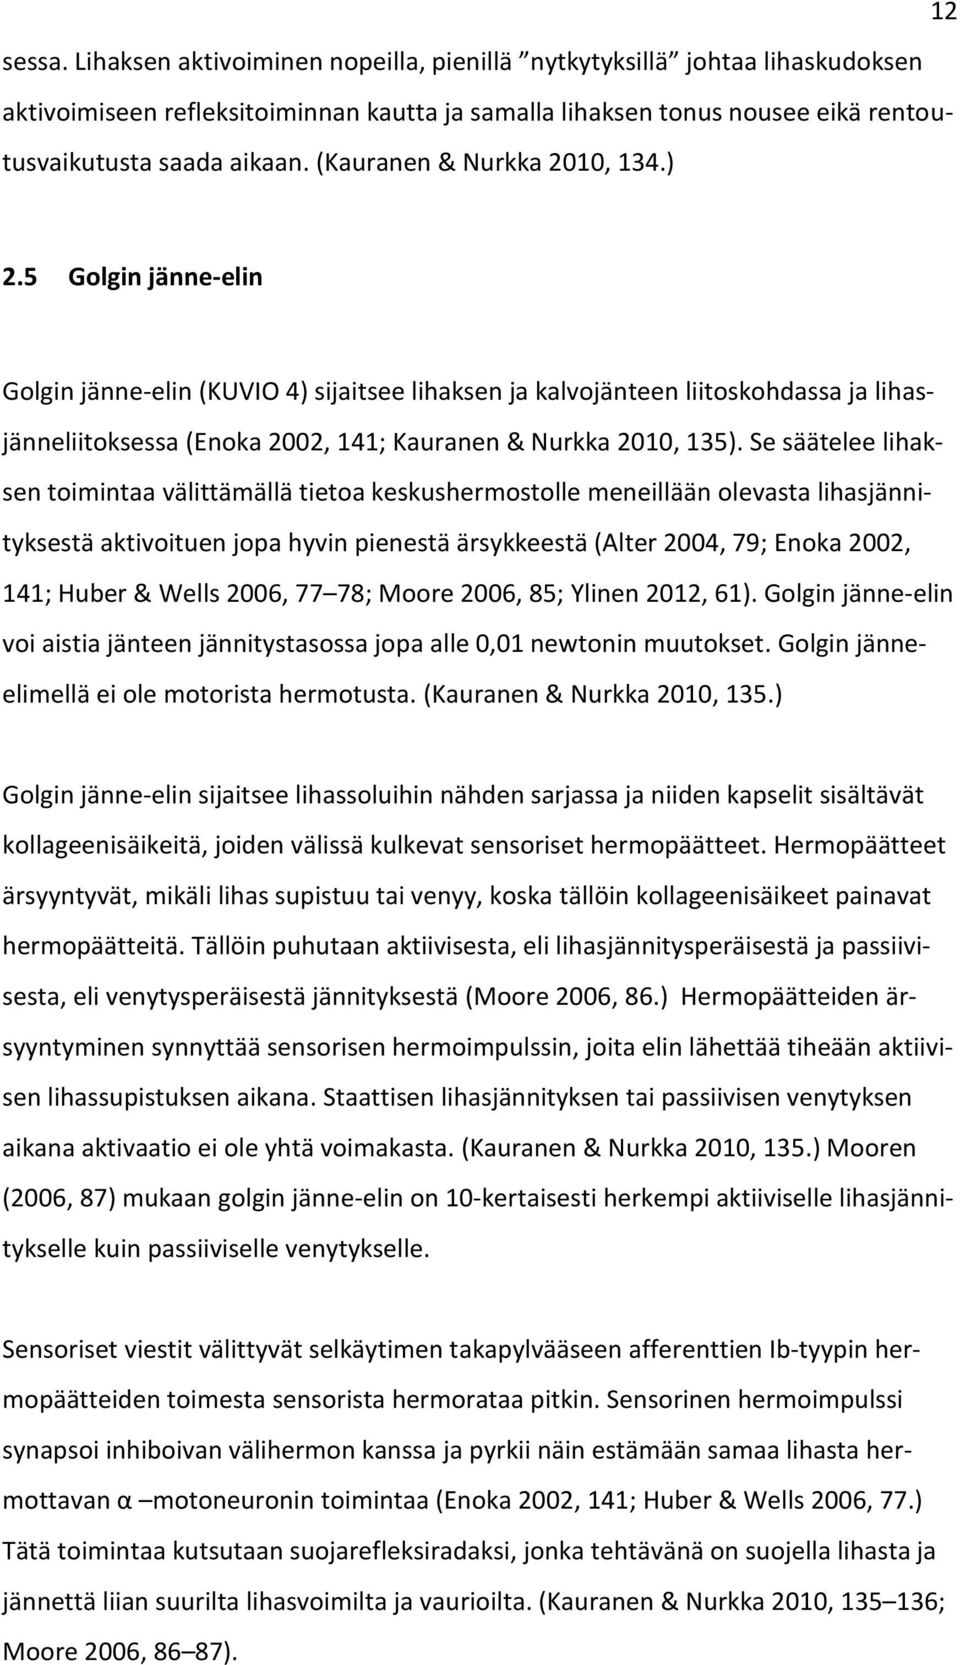 5 Golgin jänne-elin Golgin jänne-elin (KUVIO 4) sijaitsee lihaksen ja kalvojänteen liitoskohdassa ja lihasjänneliitoksessa (Enoka 2002, 141; Kauranen & Nurkka 2010, 135).